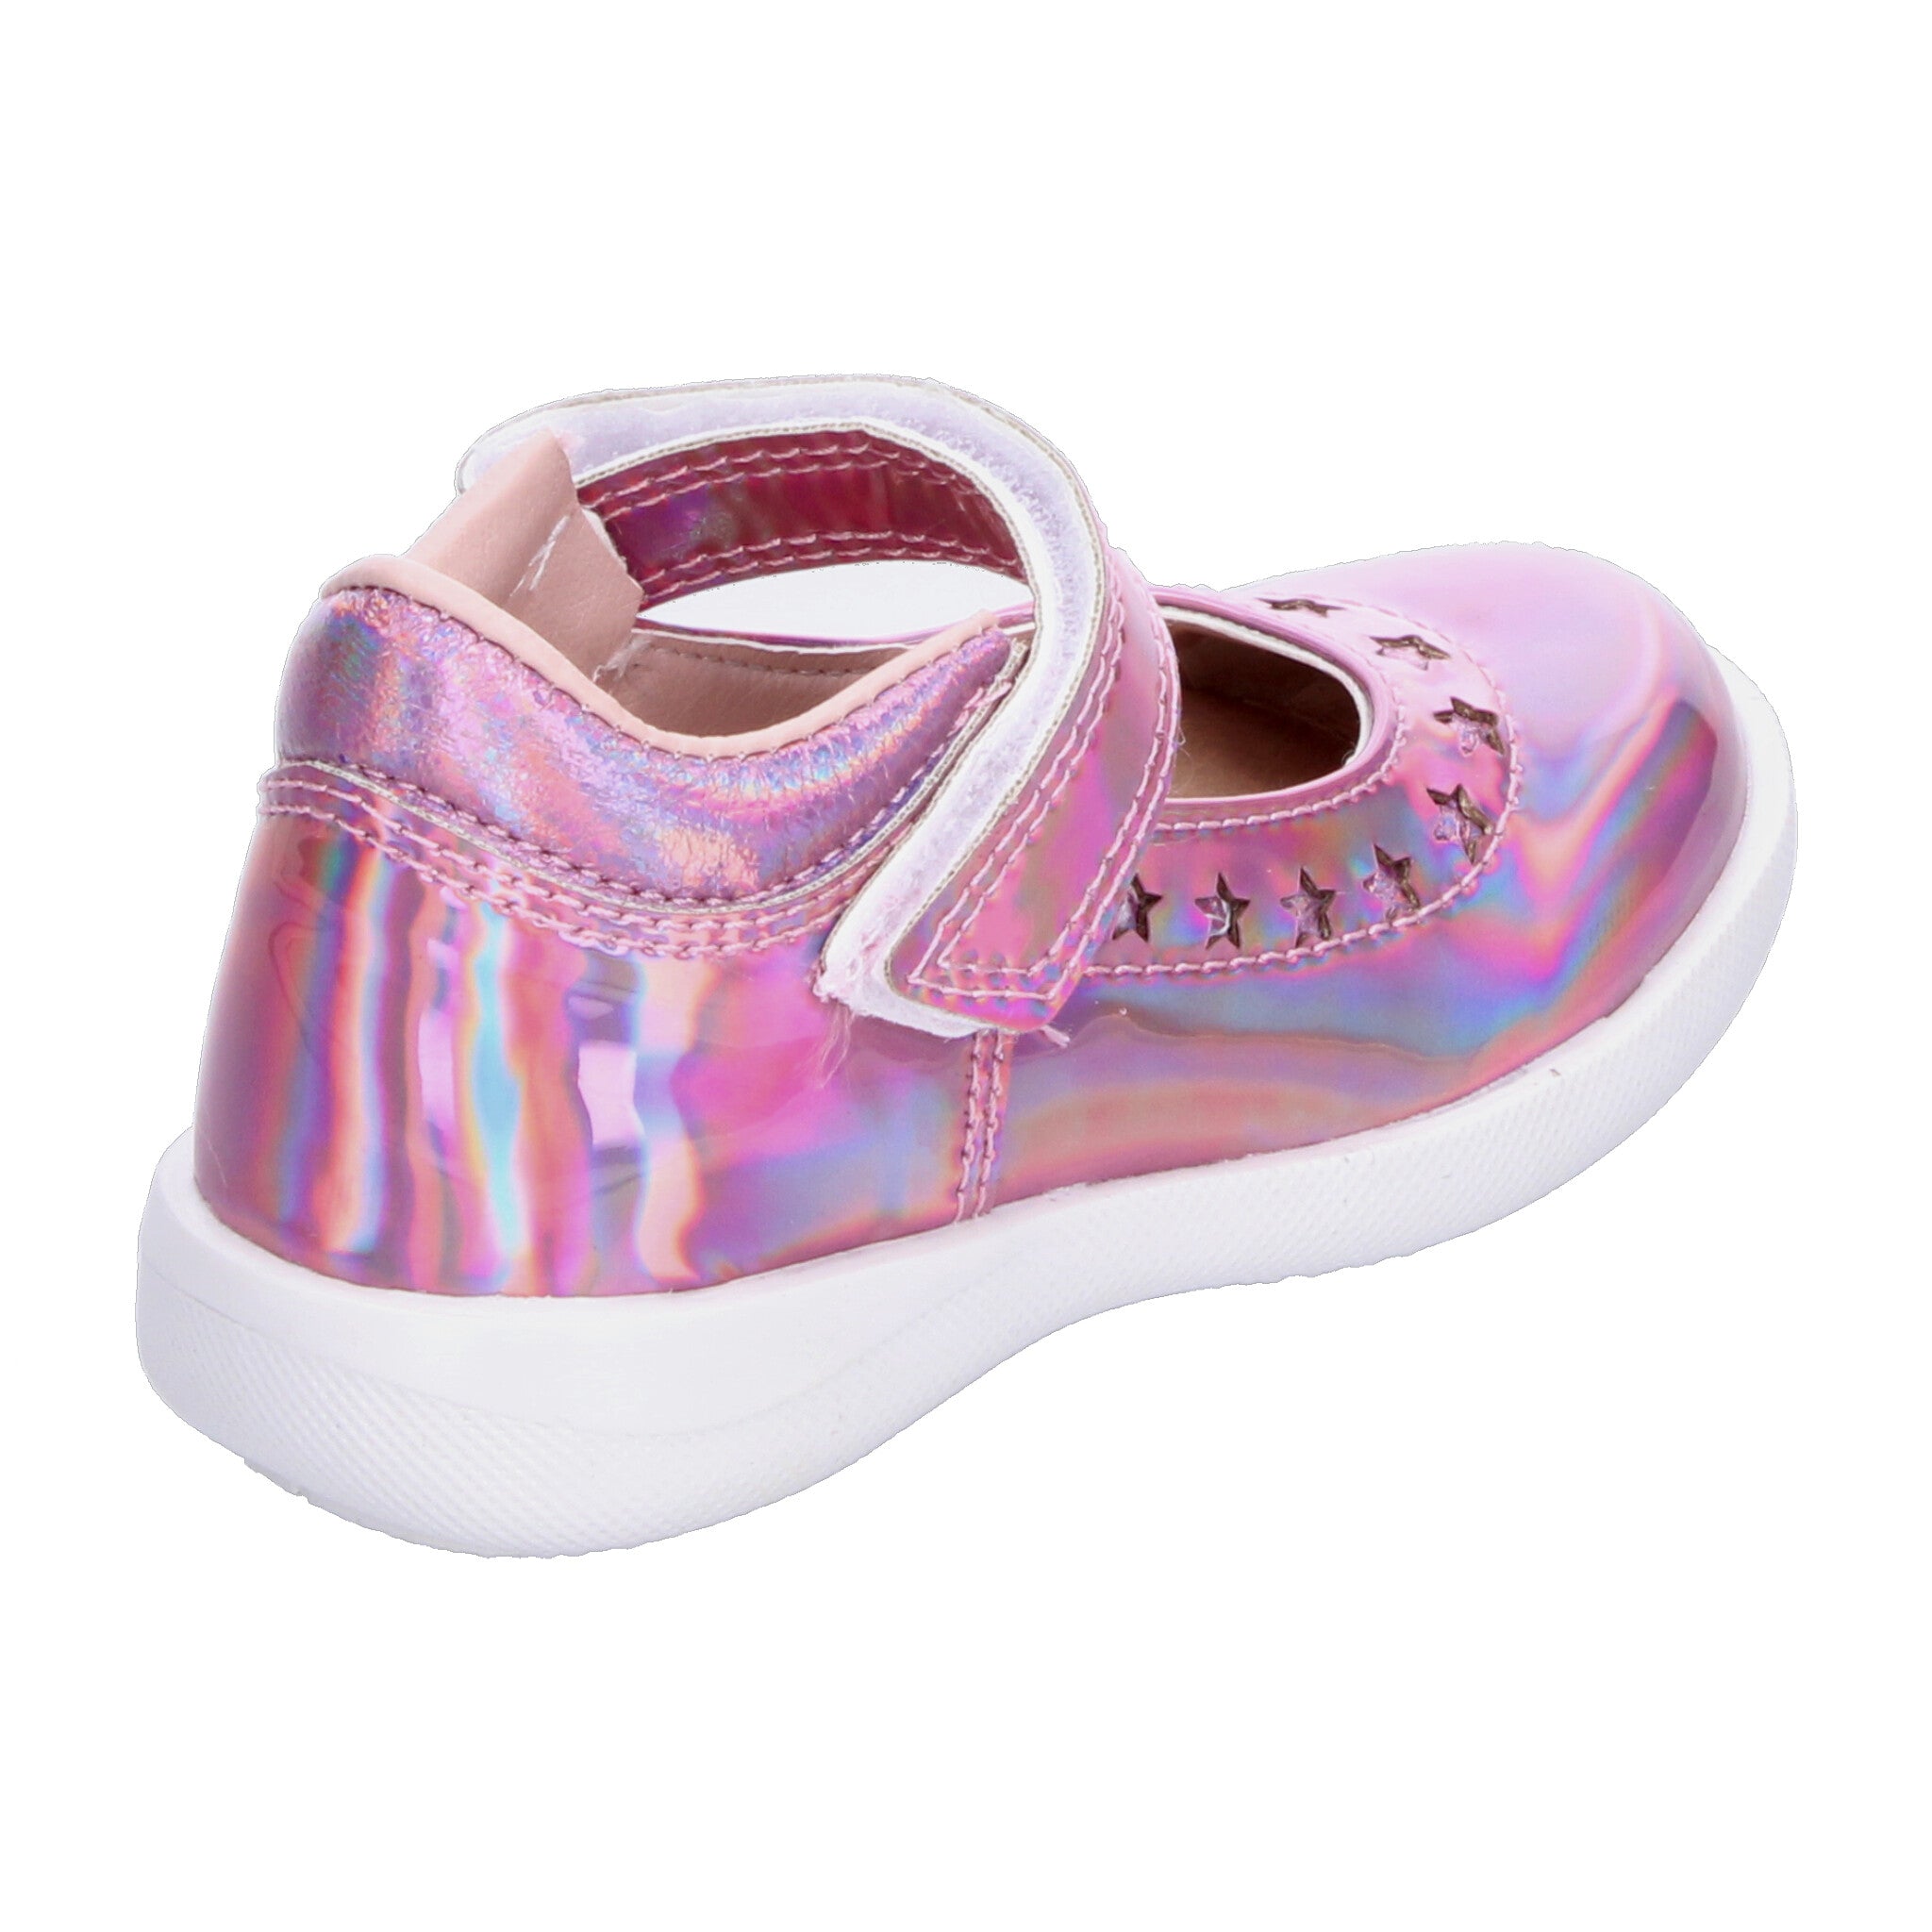 Zapato Casual Minipapos Rosa para Niña [MNP300] MINIPAPOS 